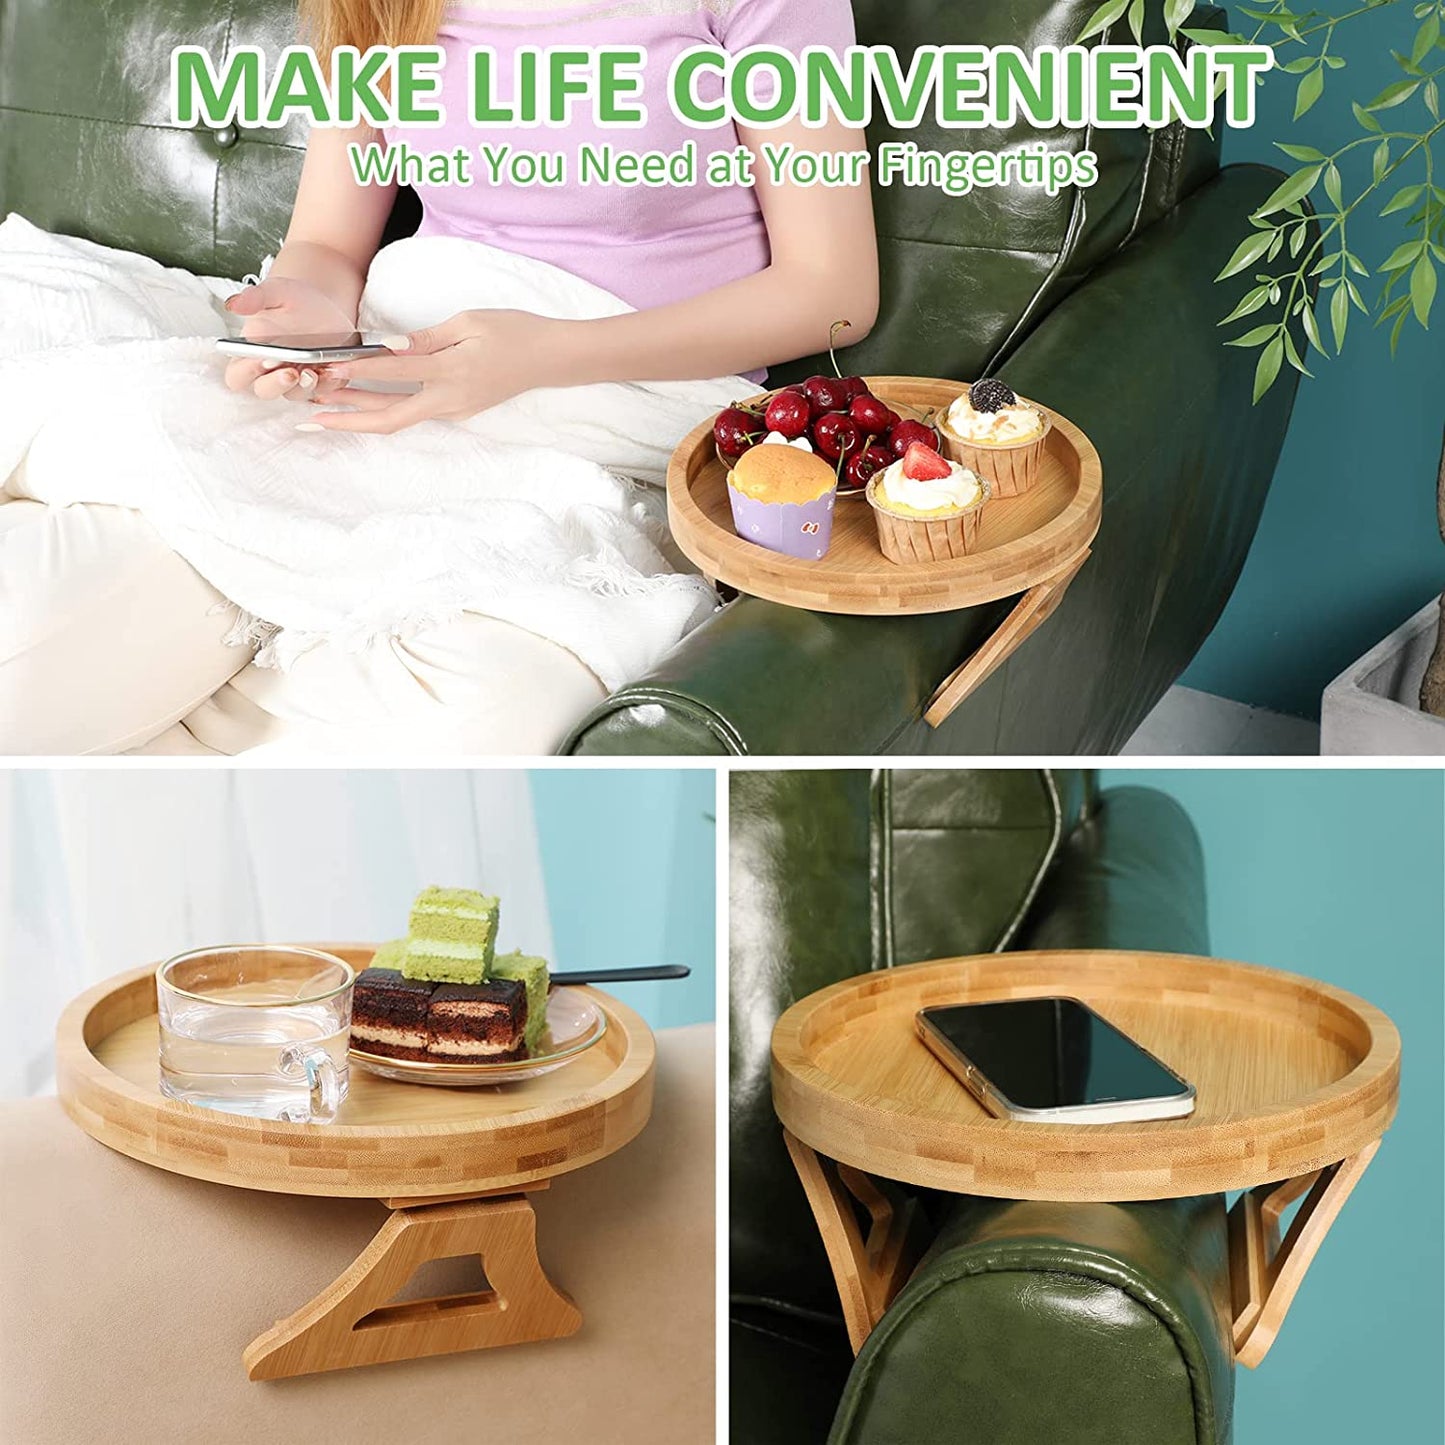 Circle Bamboo Sofa Arm Tray